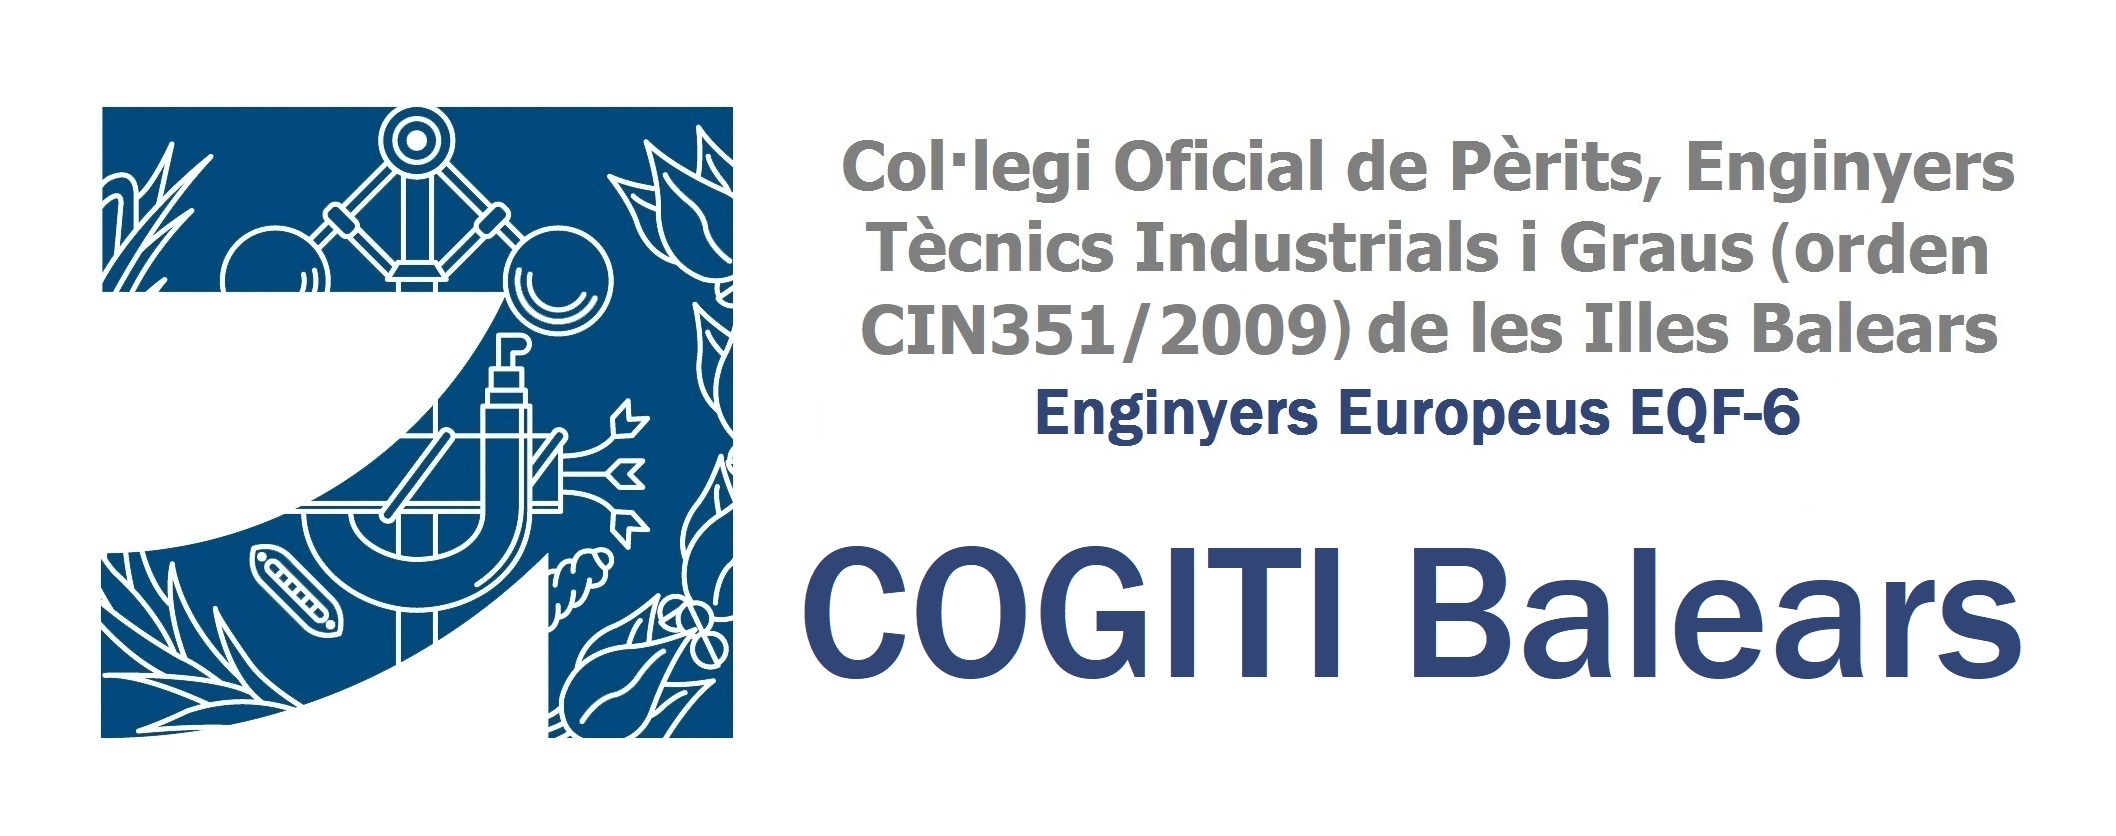 Asociación de Graduados e Ingenieros Técnicos Industriales de Baleares